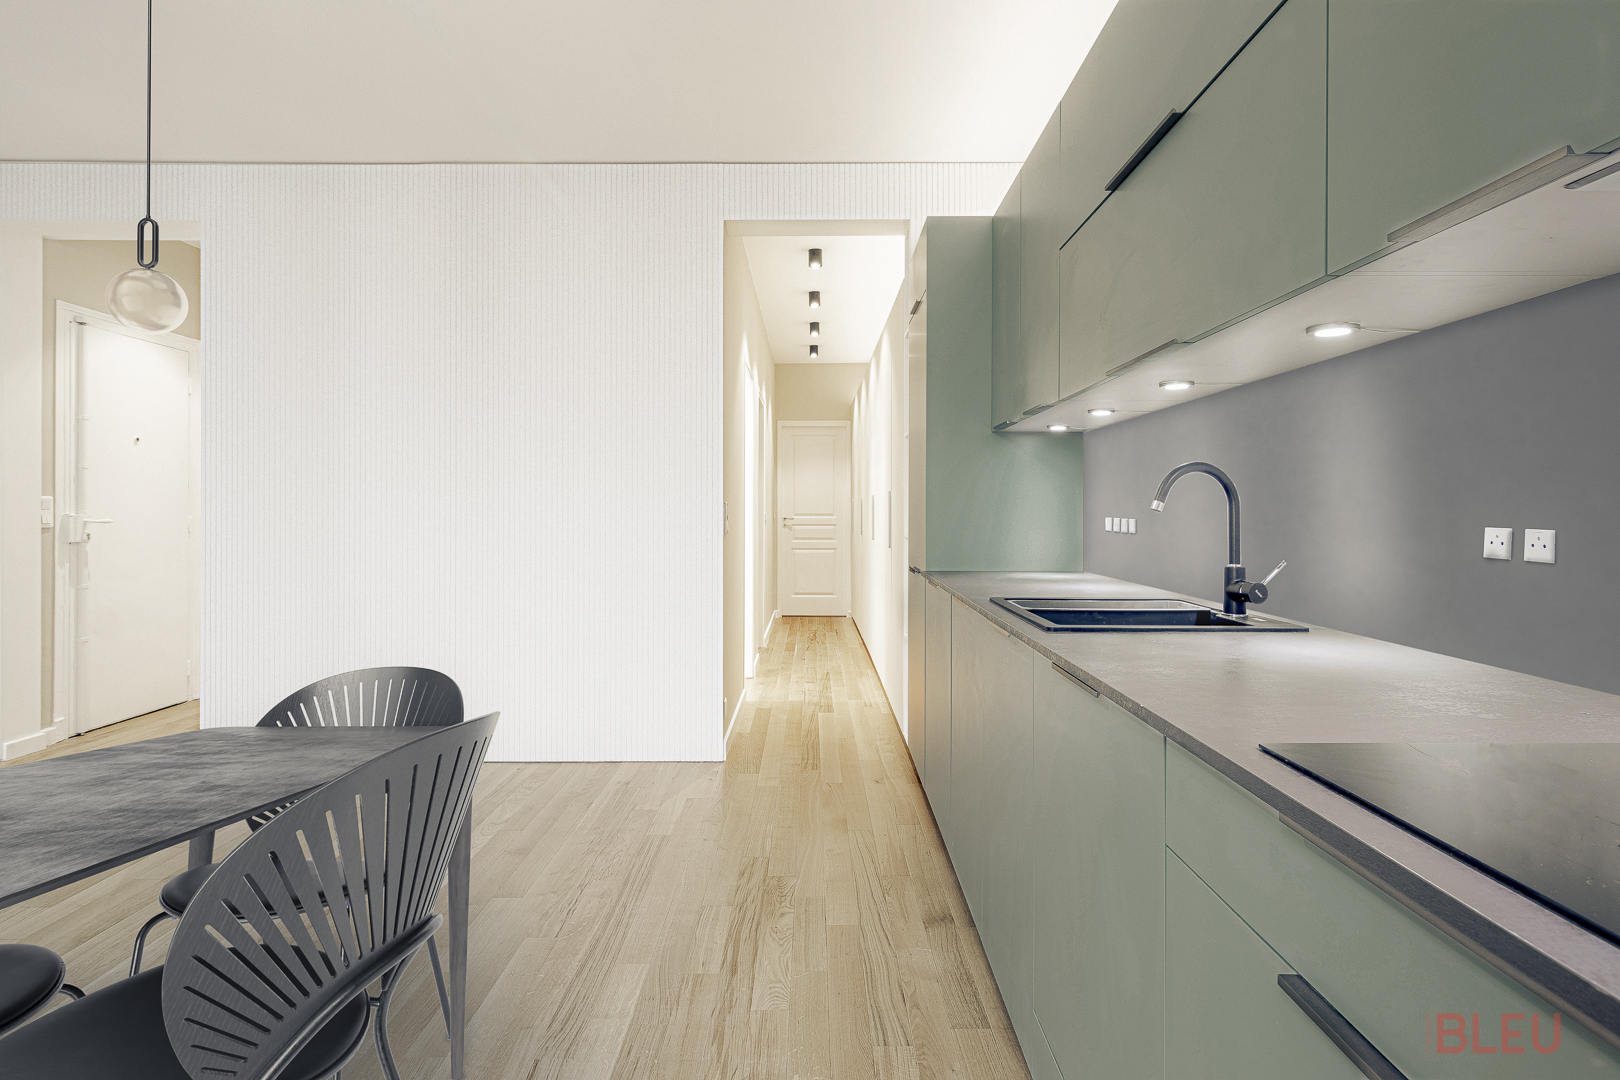 Cuisine moderne et minimaliste avec vue sur couloir dans un appartement rénové à Paris. Rénovation par architecte intérieur Paris, combinant design contemporain et respect du style haussmannien.